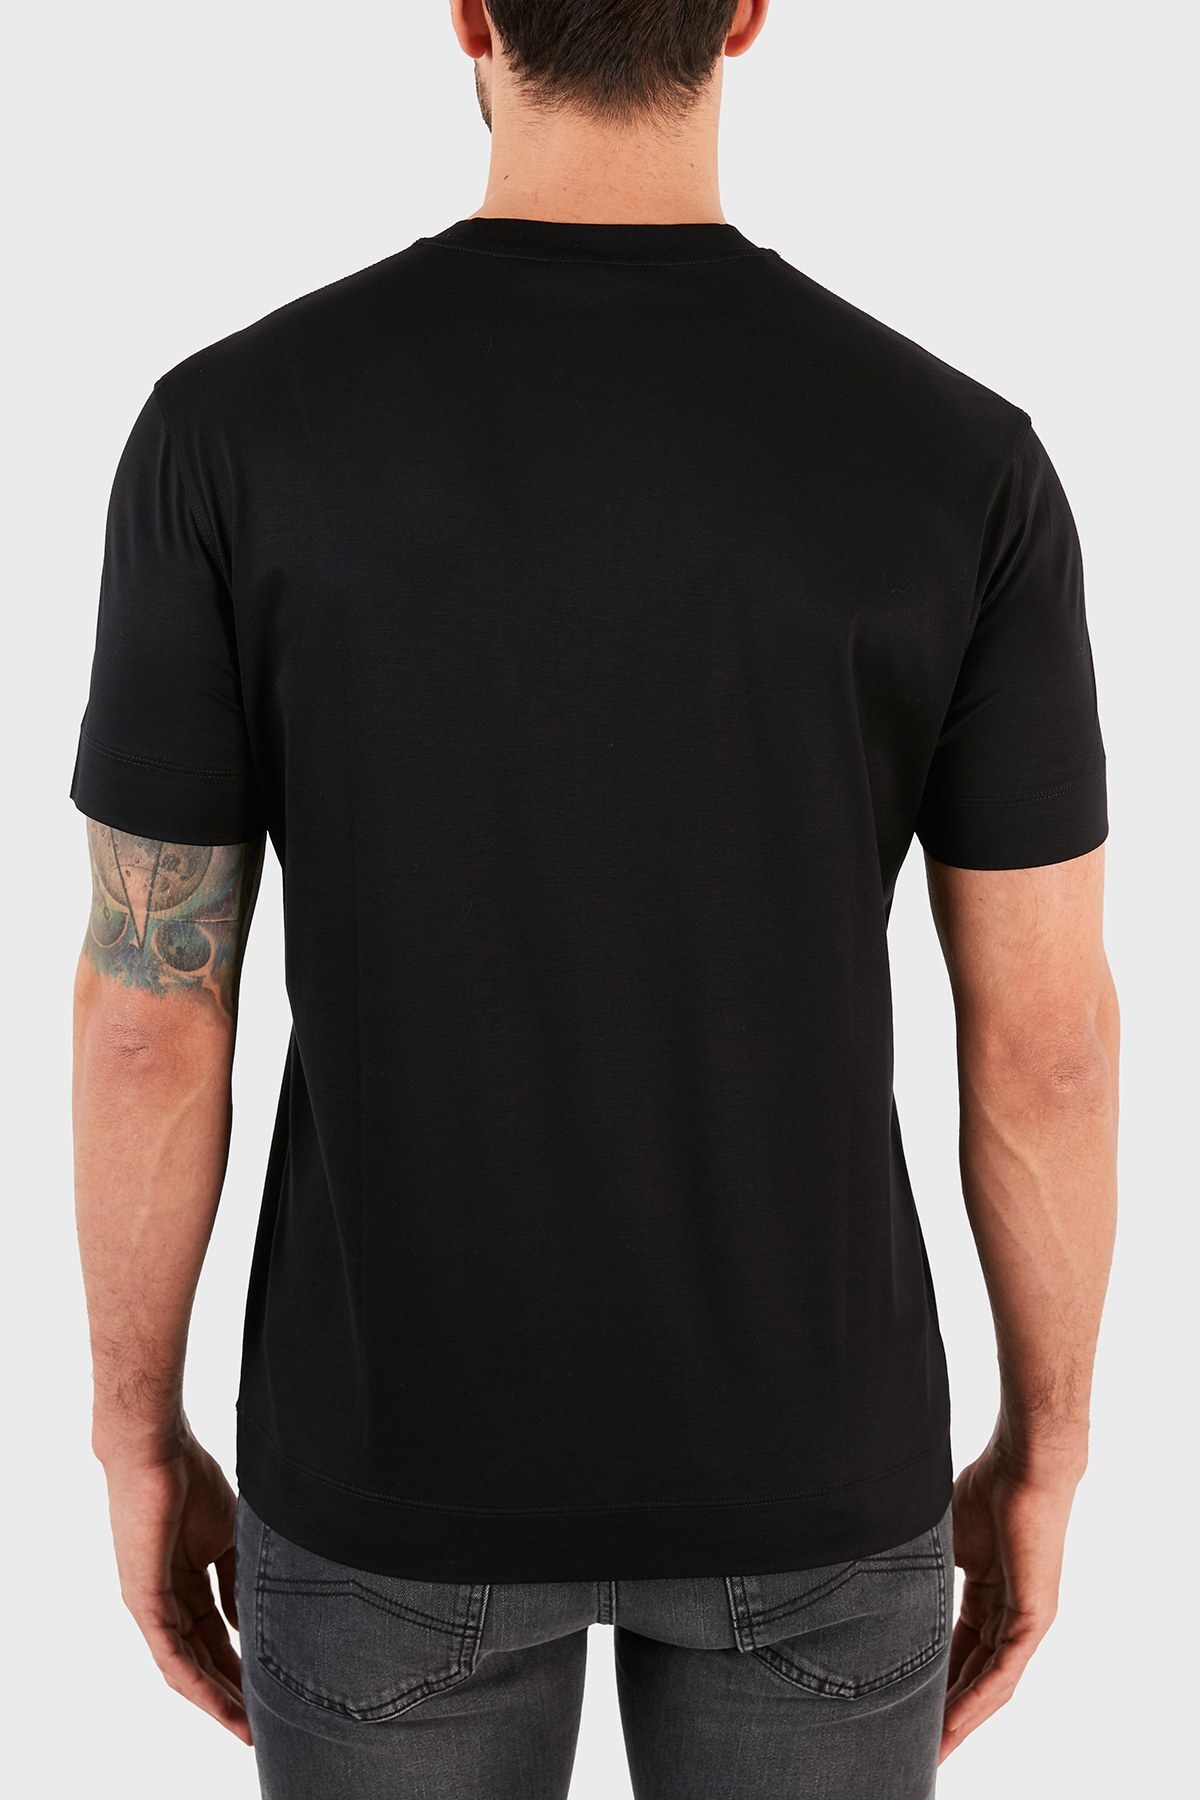 Emporio Armani Logo Baskılı Bisiklet Yaka Erkek T Shirt S 3K1TQ0 1JUVZ 0999 SİYAH